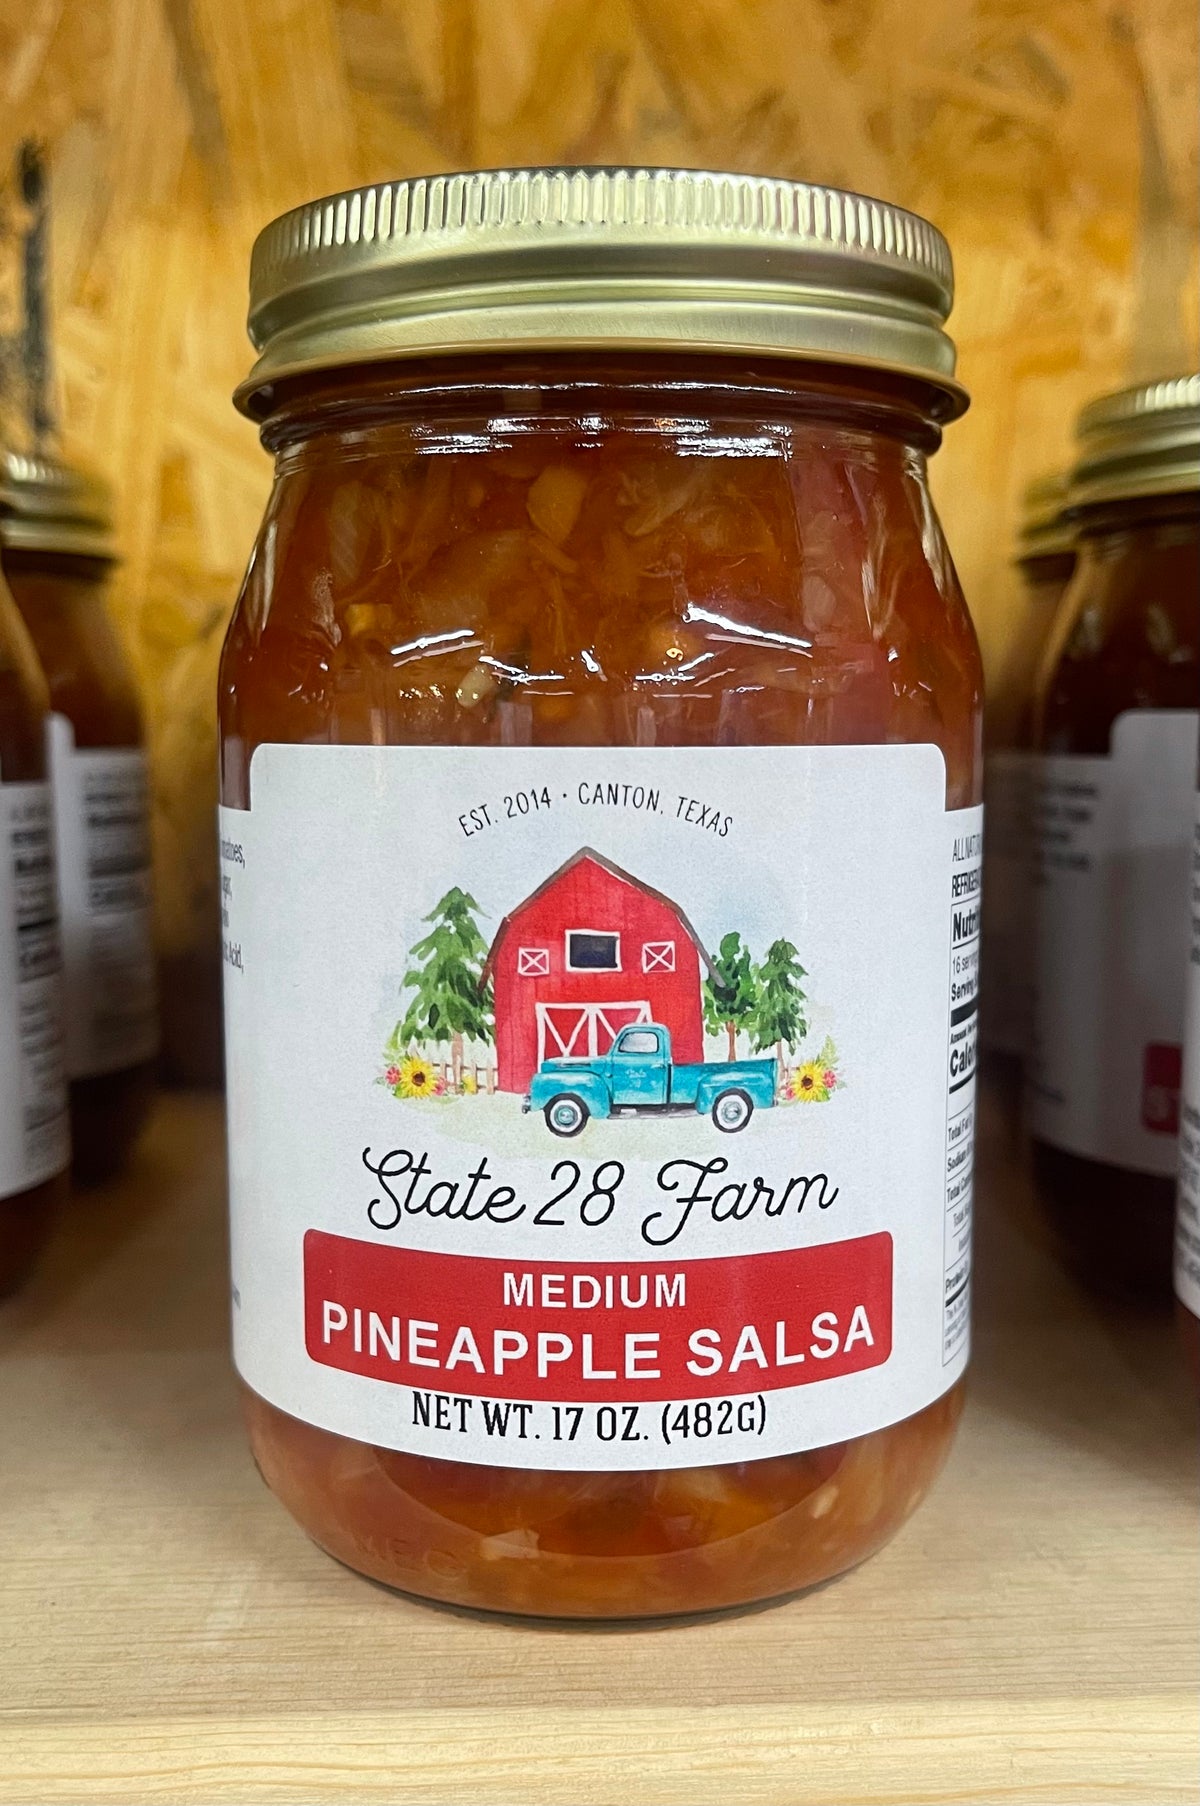 State 28 Farm - Medium Pineapple Salsa